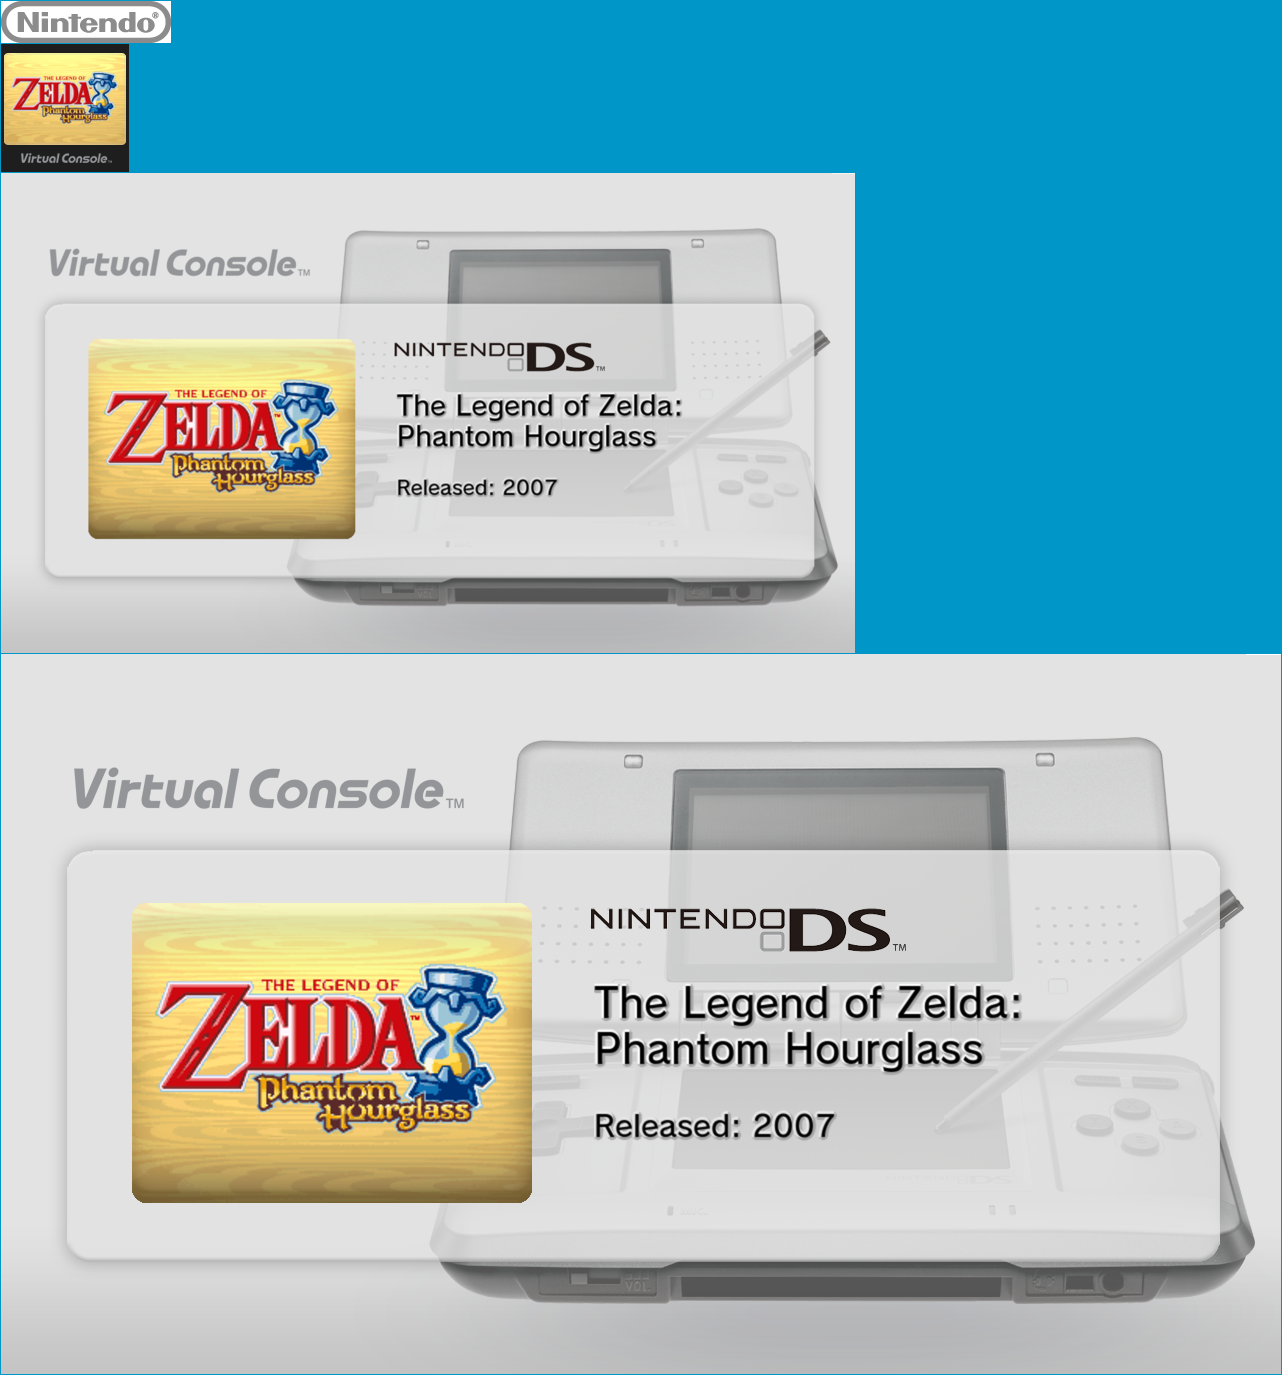 Virtual Console - The Legend of Zelda: Phantom Hourglass